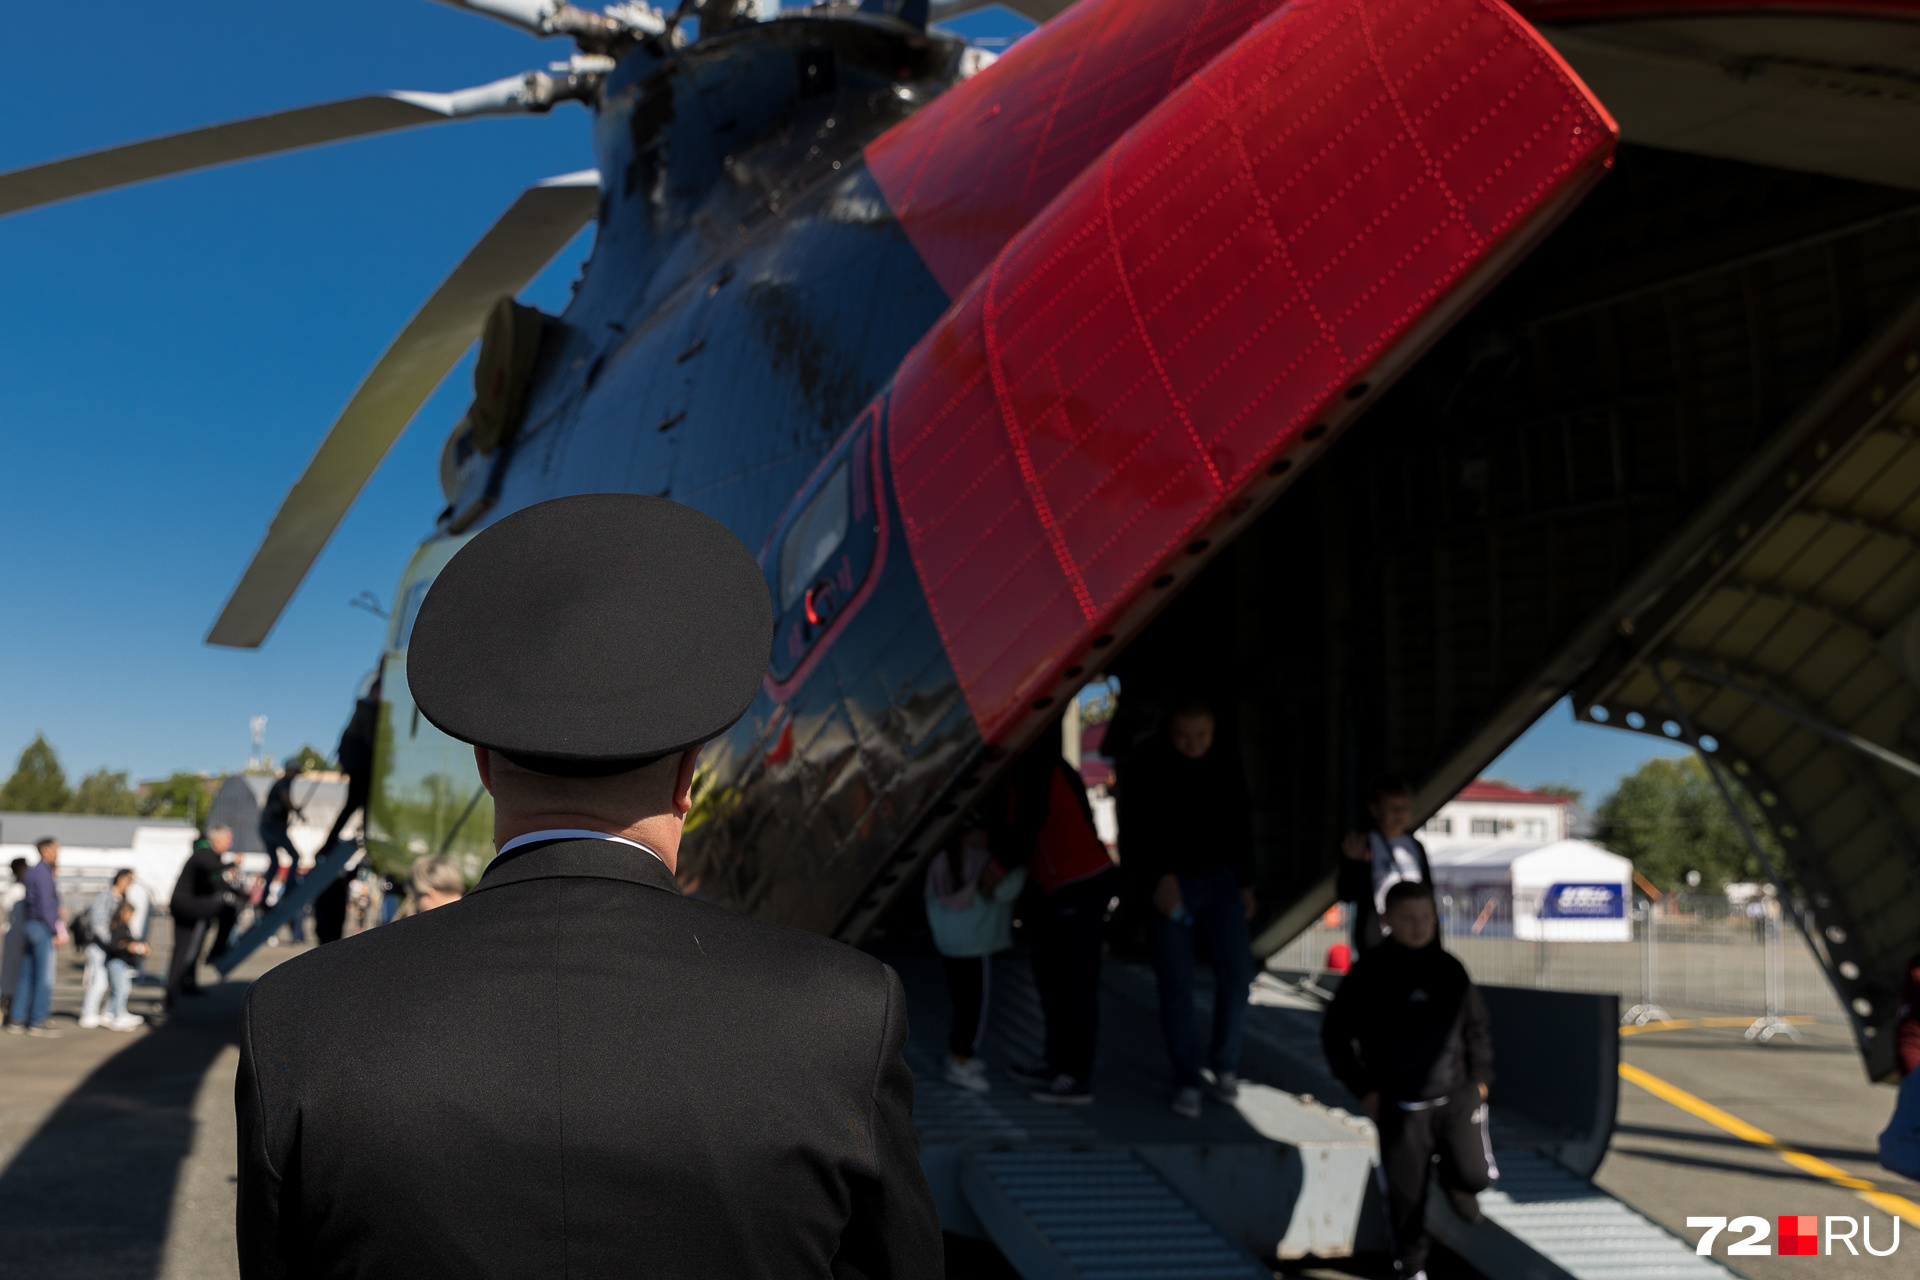 Ми-26. Крупнейший в мире серийно выпускаемый транспортный вертолет